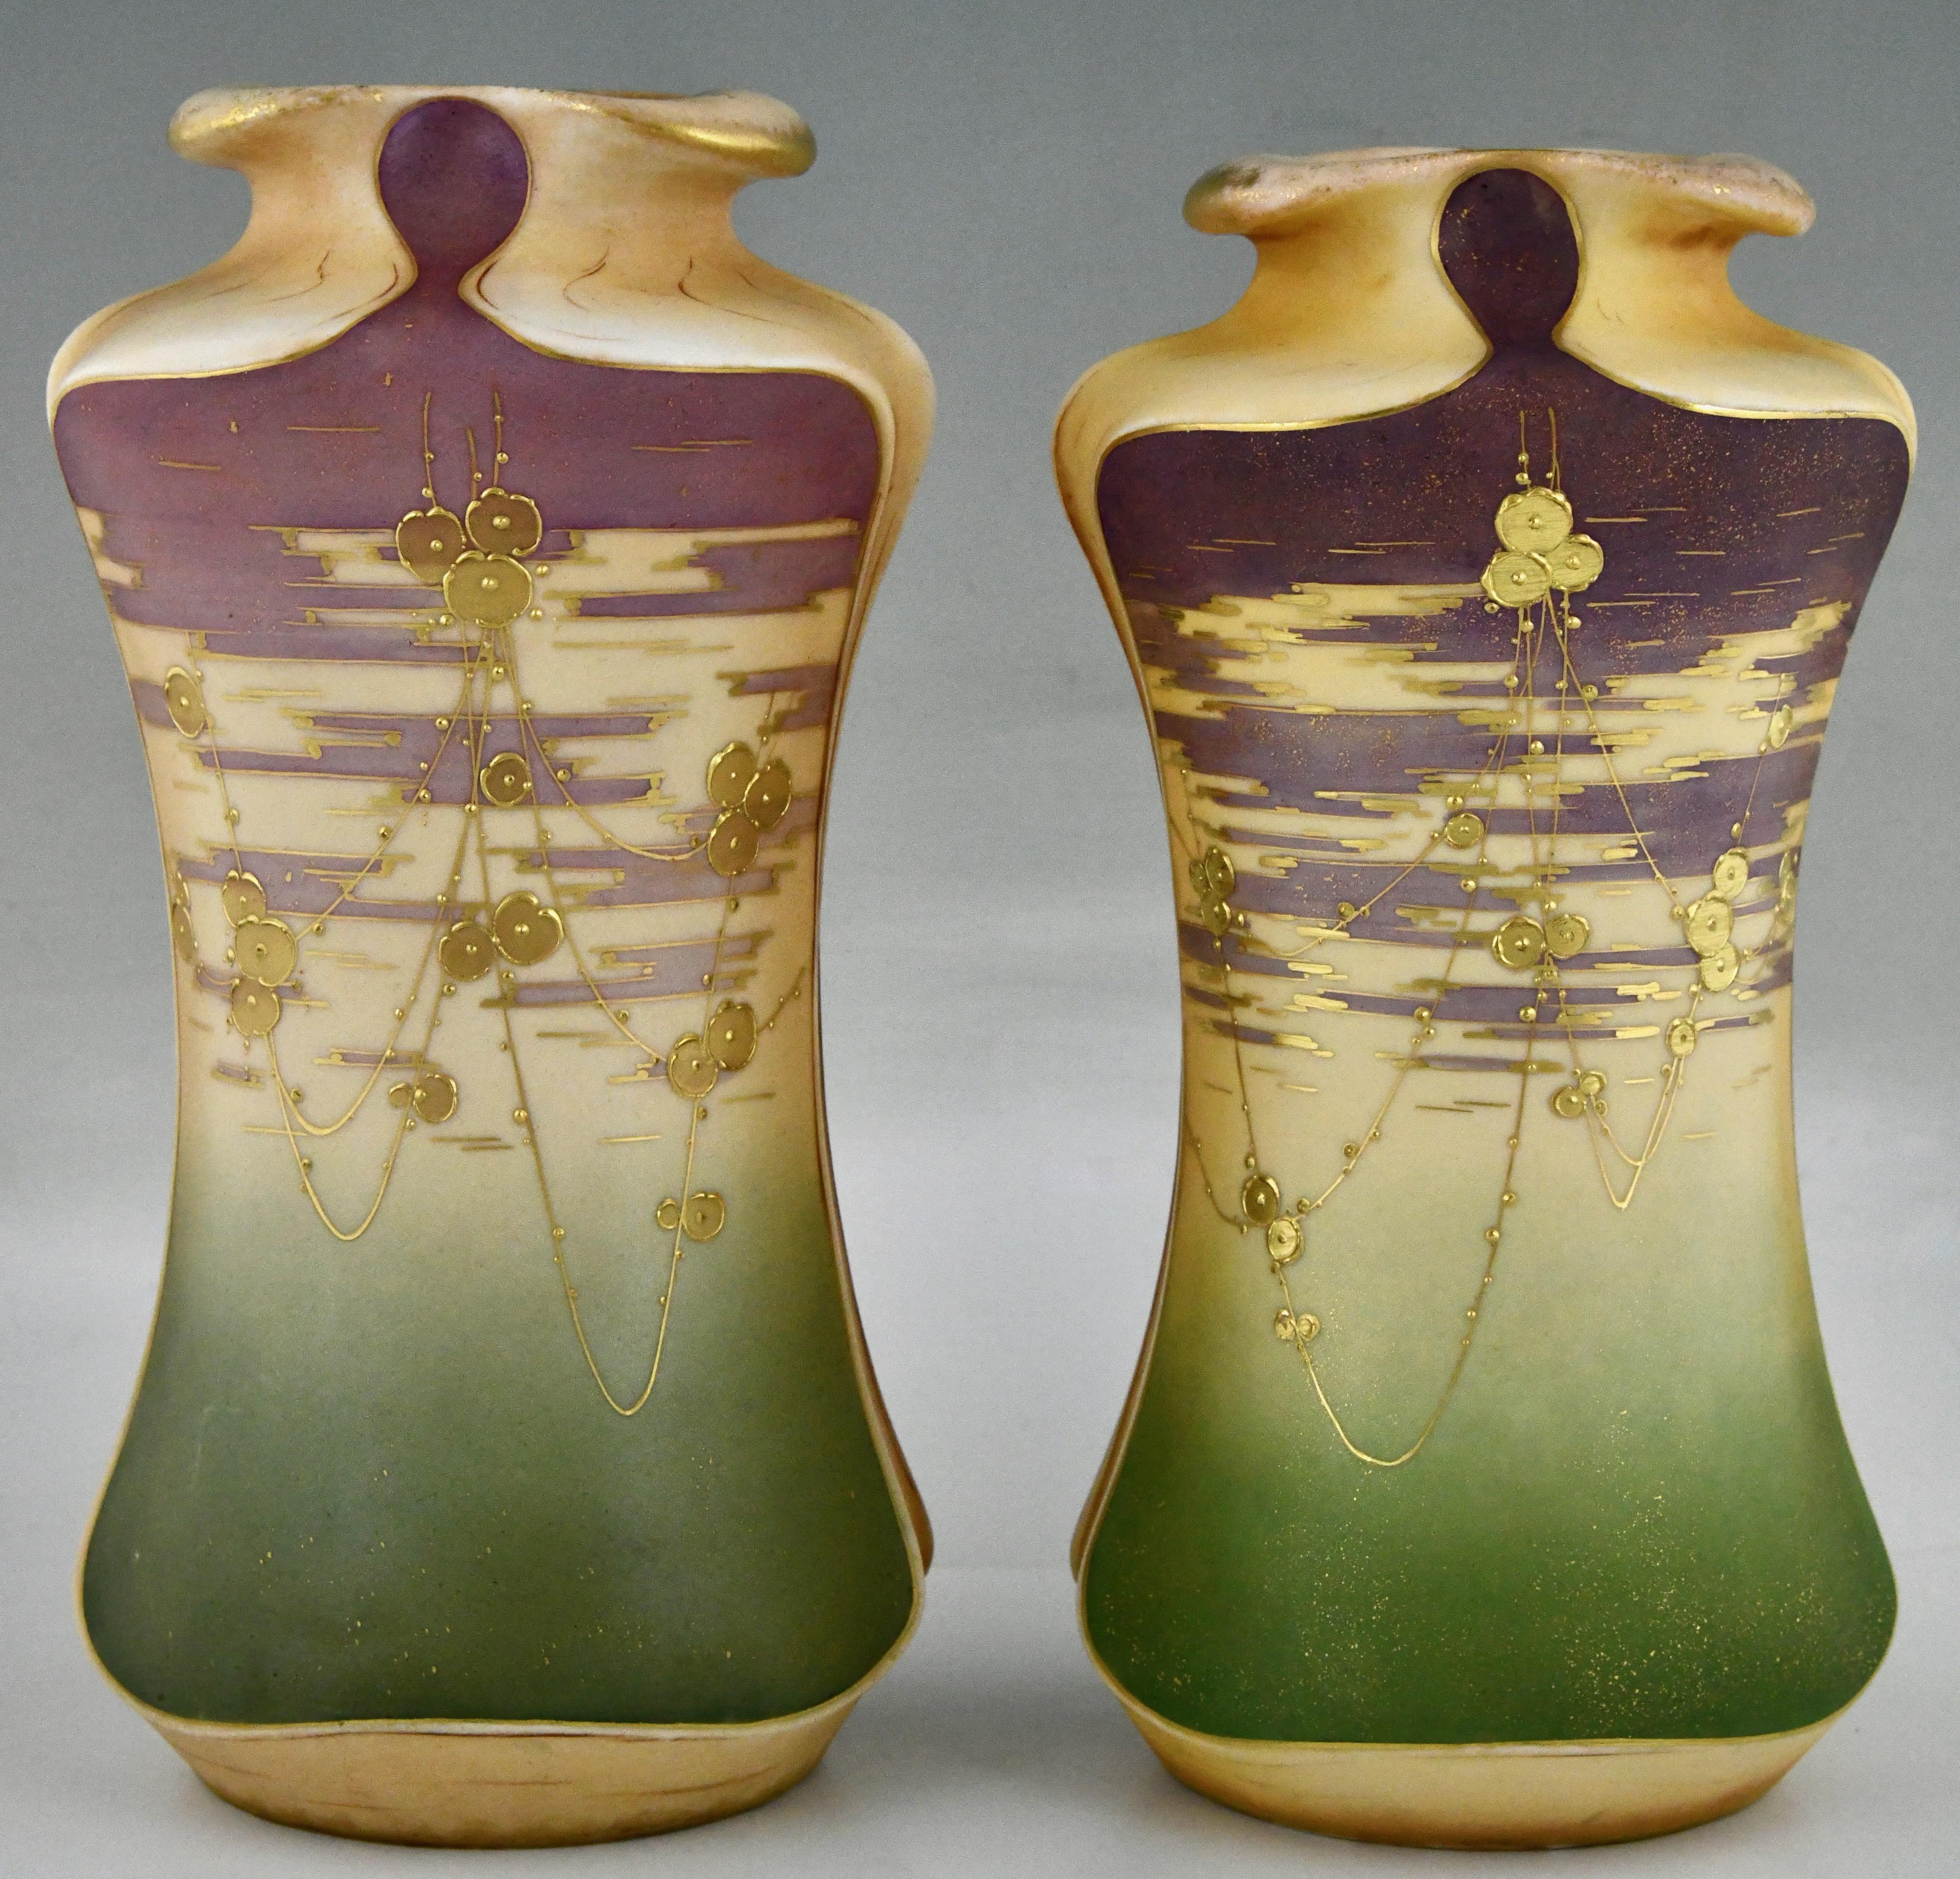 Vases en céramique Art nouveau avec fleurs dorées de Turn-Teplitz marqués RStK et Amphora. 
Céramique, peinte à la main en vert et violet avec des fleurs dorées. 
Autriche vers 1900